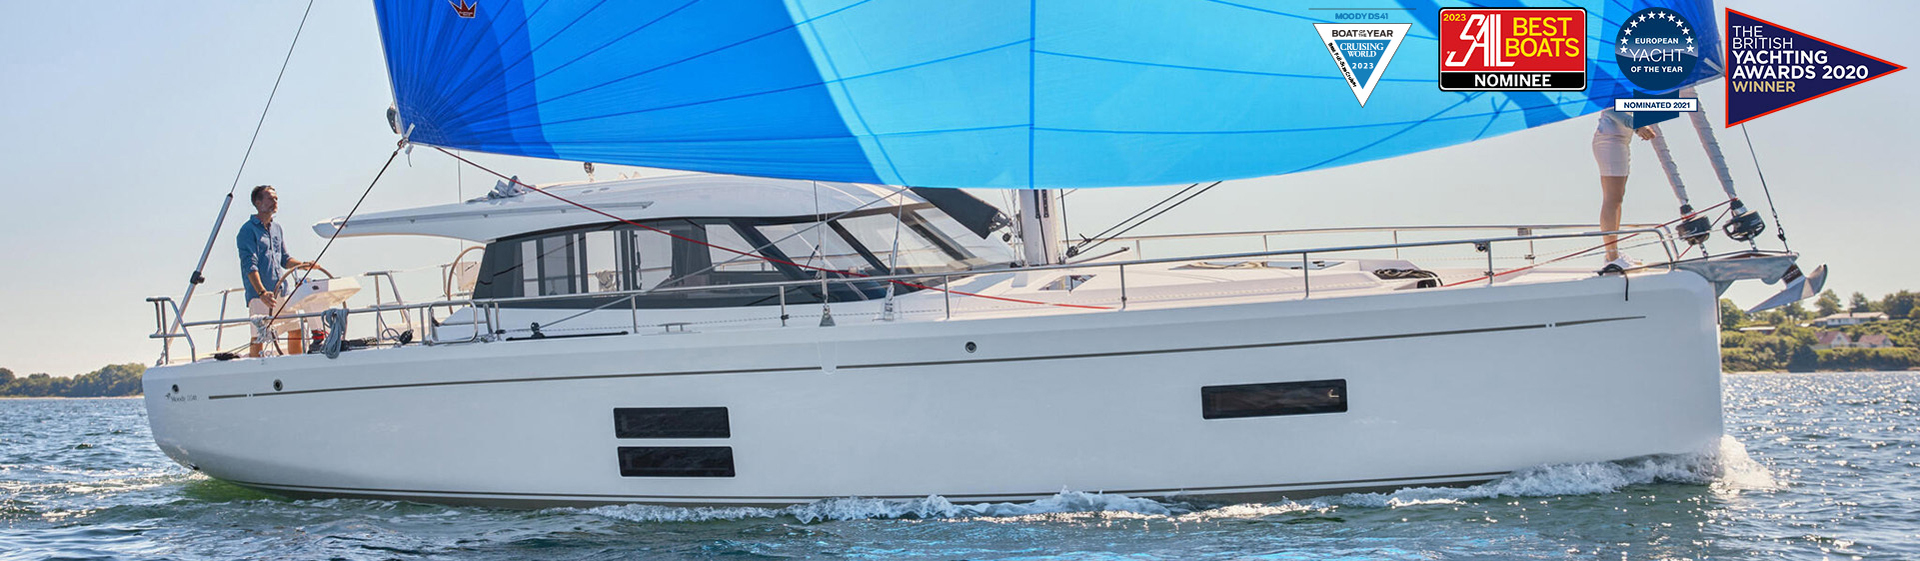 Koncepcja żaglówki Bluewater od Moody yachts